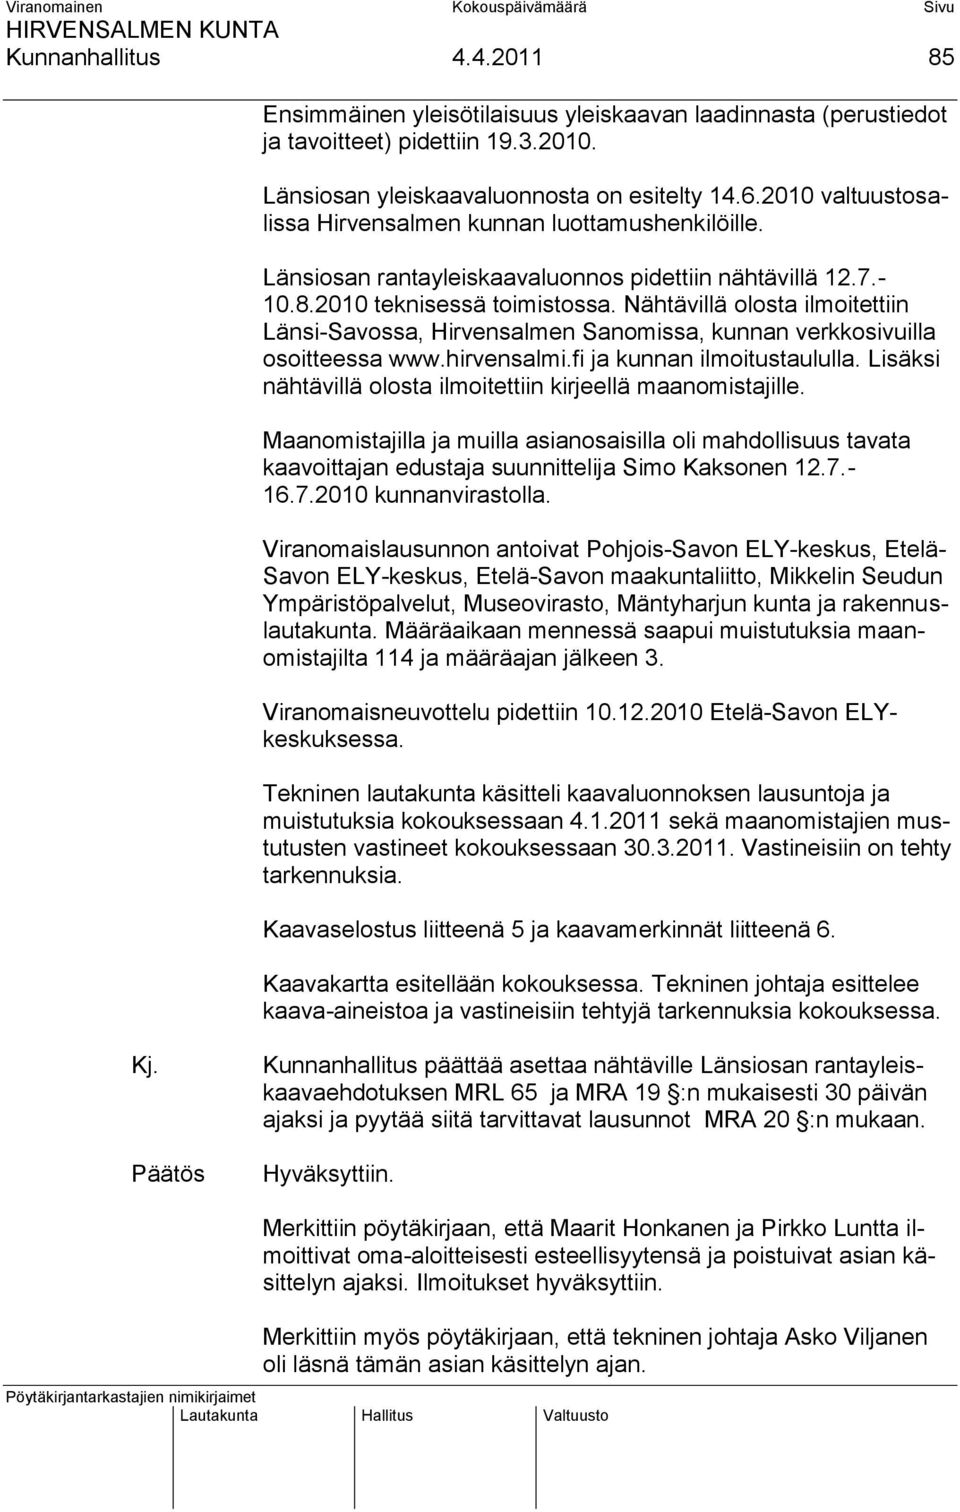 Nähtävillä olosta ilmoitettiin Länsi-Savossa, Hirvensalmen Sanomissa, kunnan verkkosivuilla osoitteessa www.hirvensalmi.fi ja kunnan ilmoitustaululla.